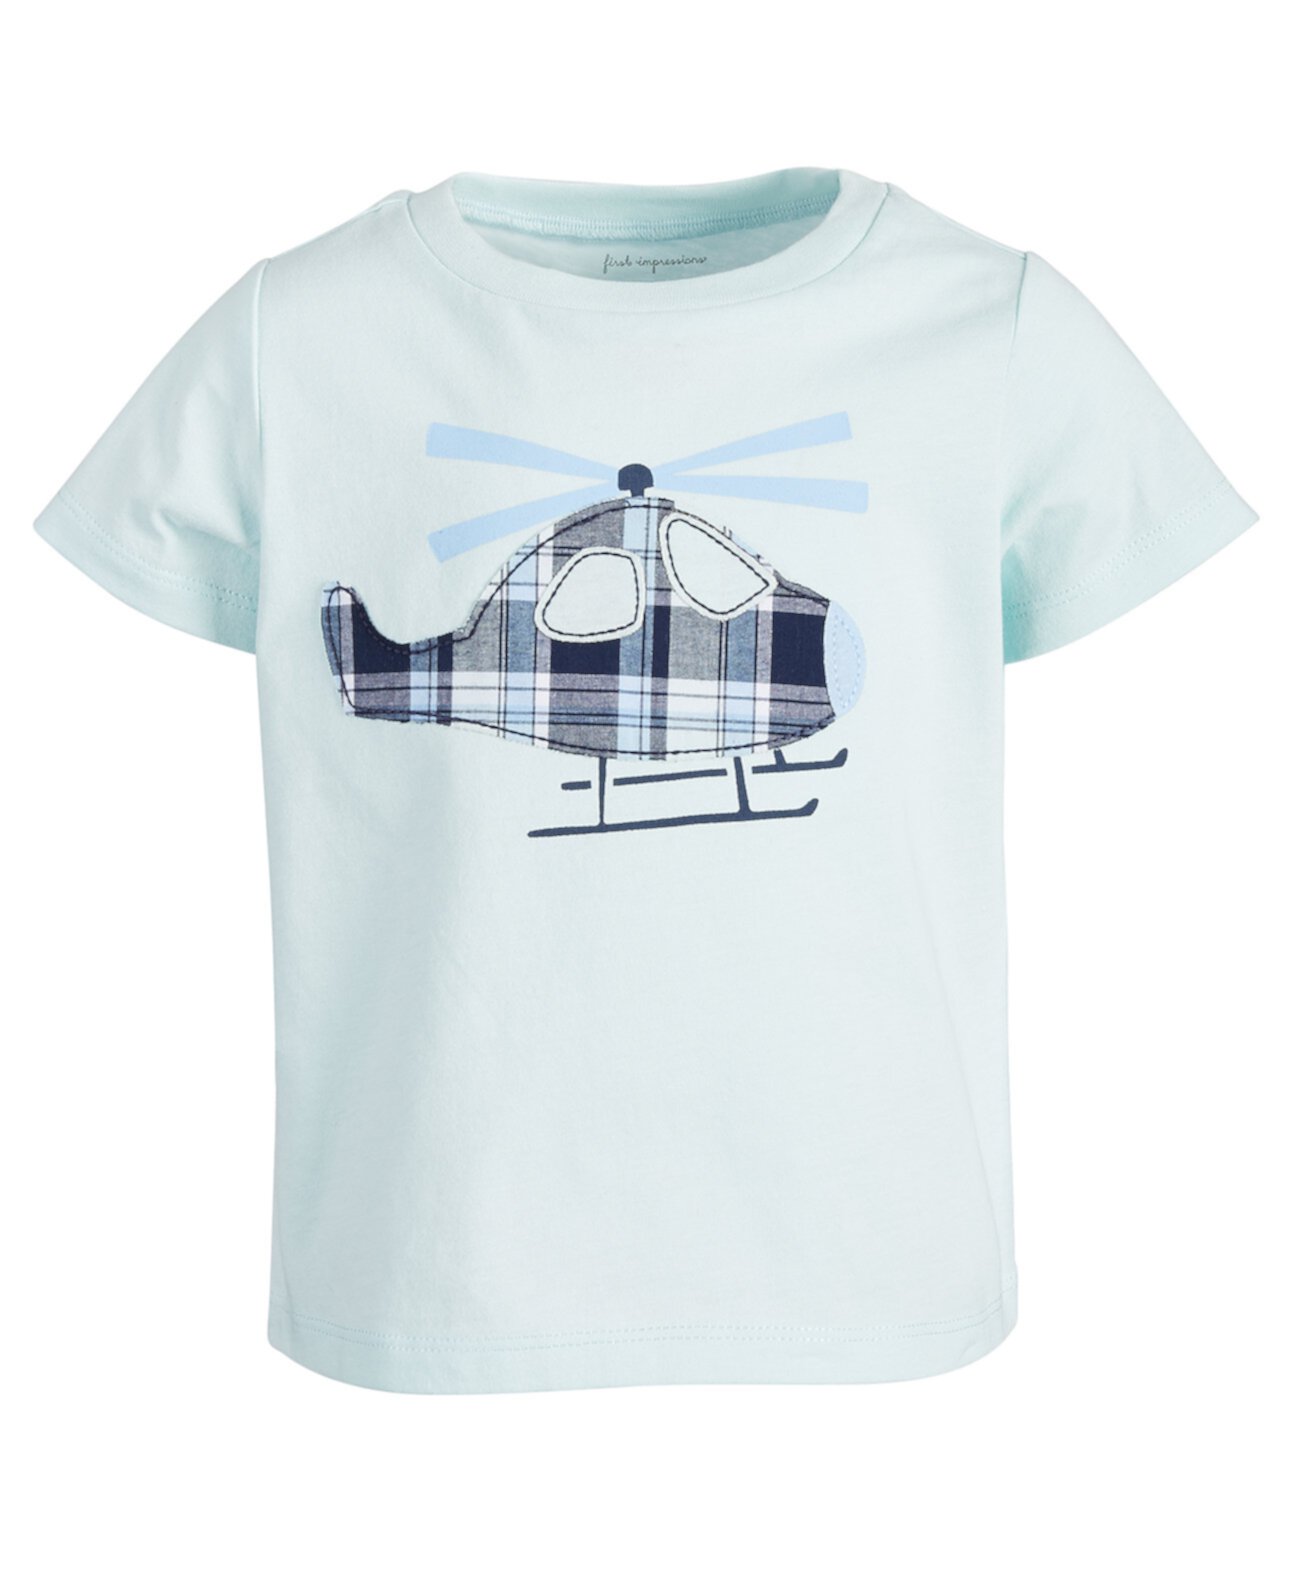 Хлопковая футболка для маленьких мальчиков с вертолетом, созданная для Macy's First Impressions